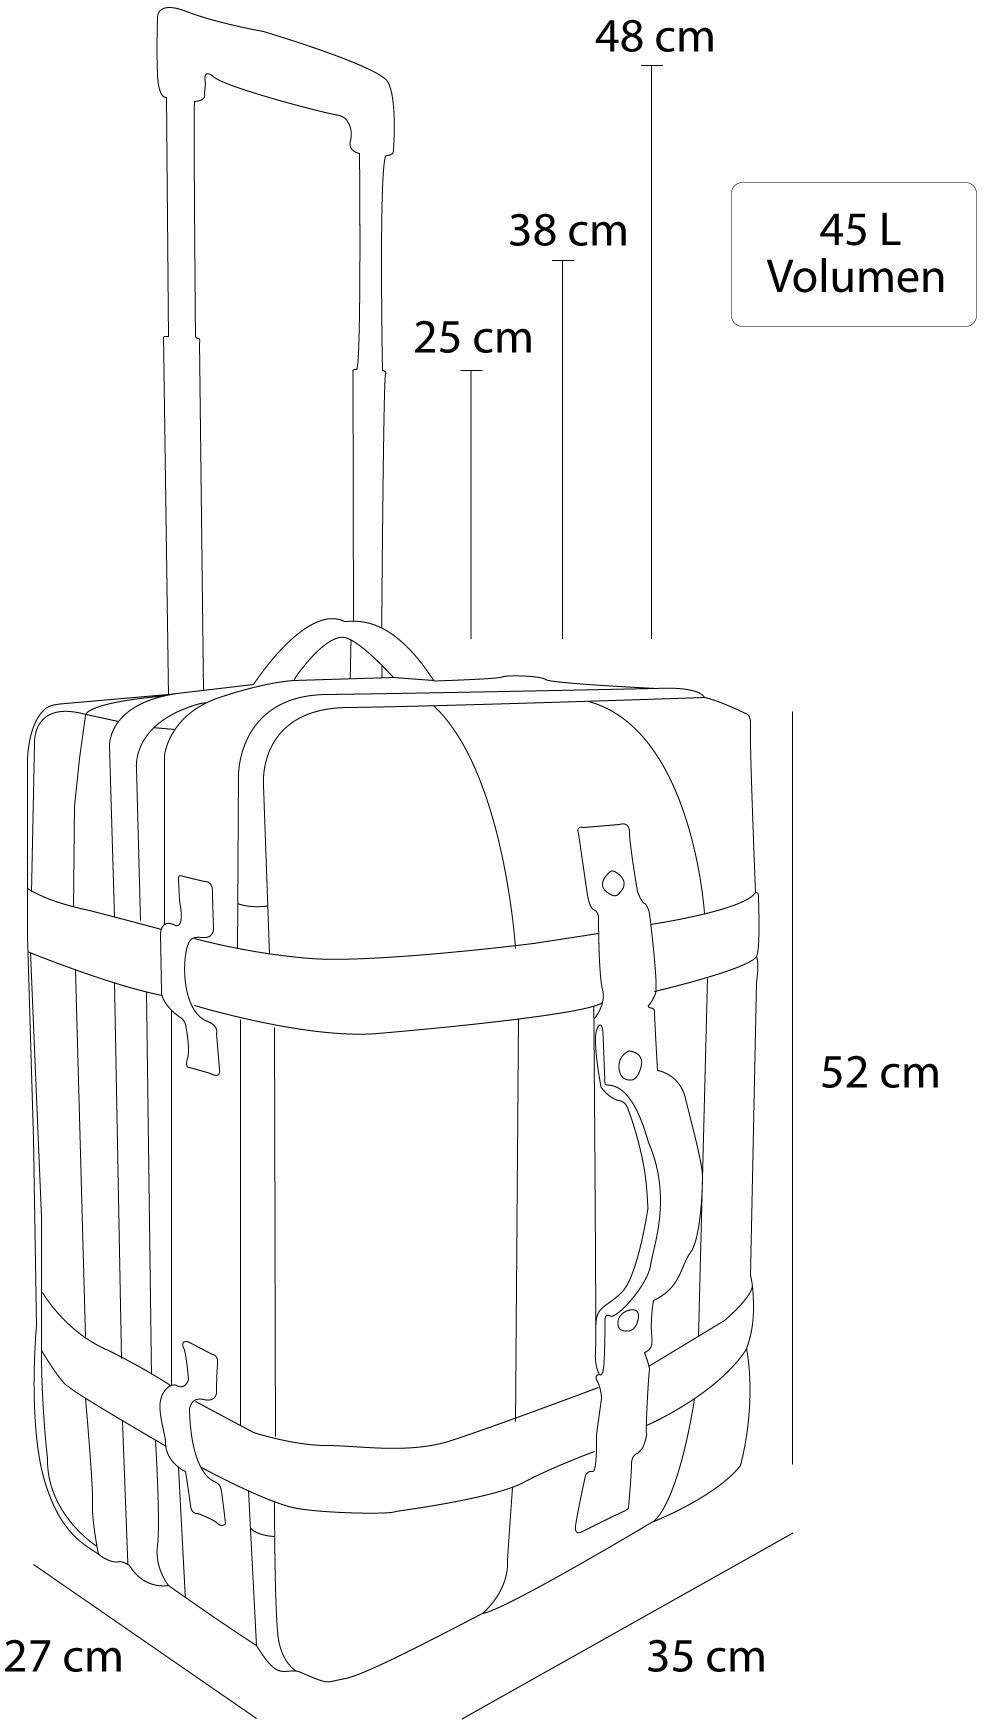 normani Reisetasche Reisetasche mit clevere Trolley Handgepäckmaß 45, Schwarz Aurori mit Fächeraufteilung